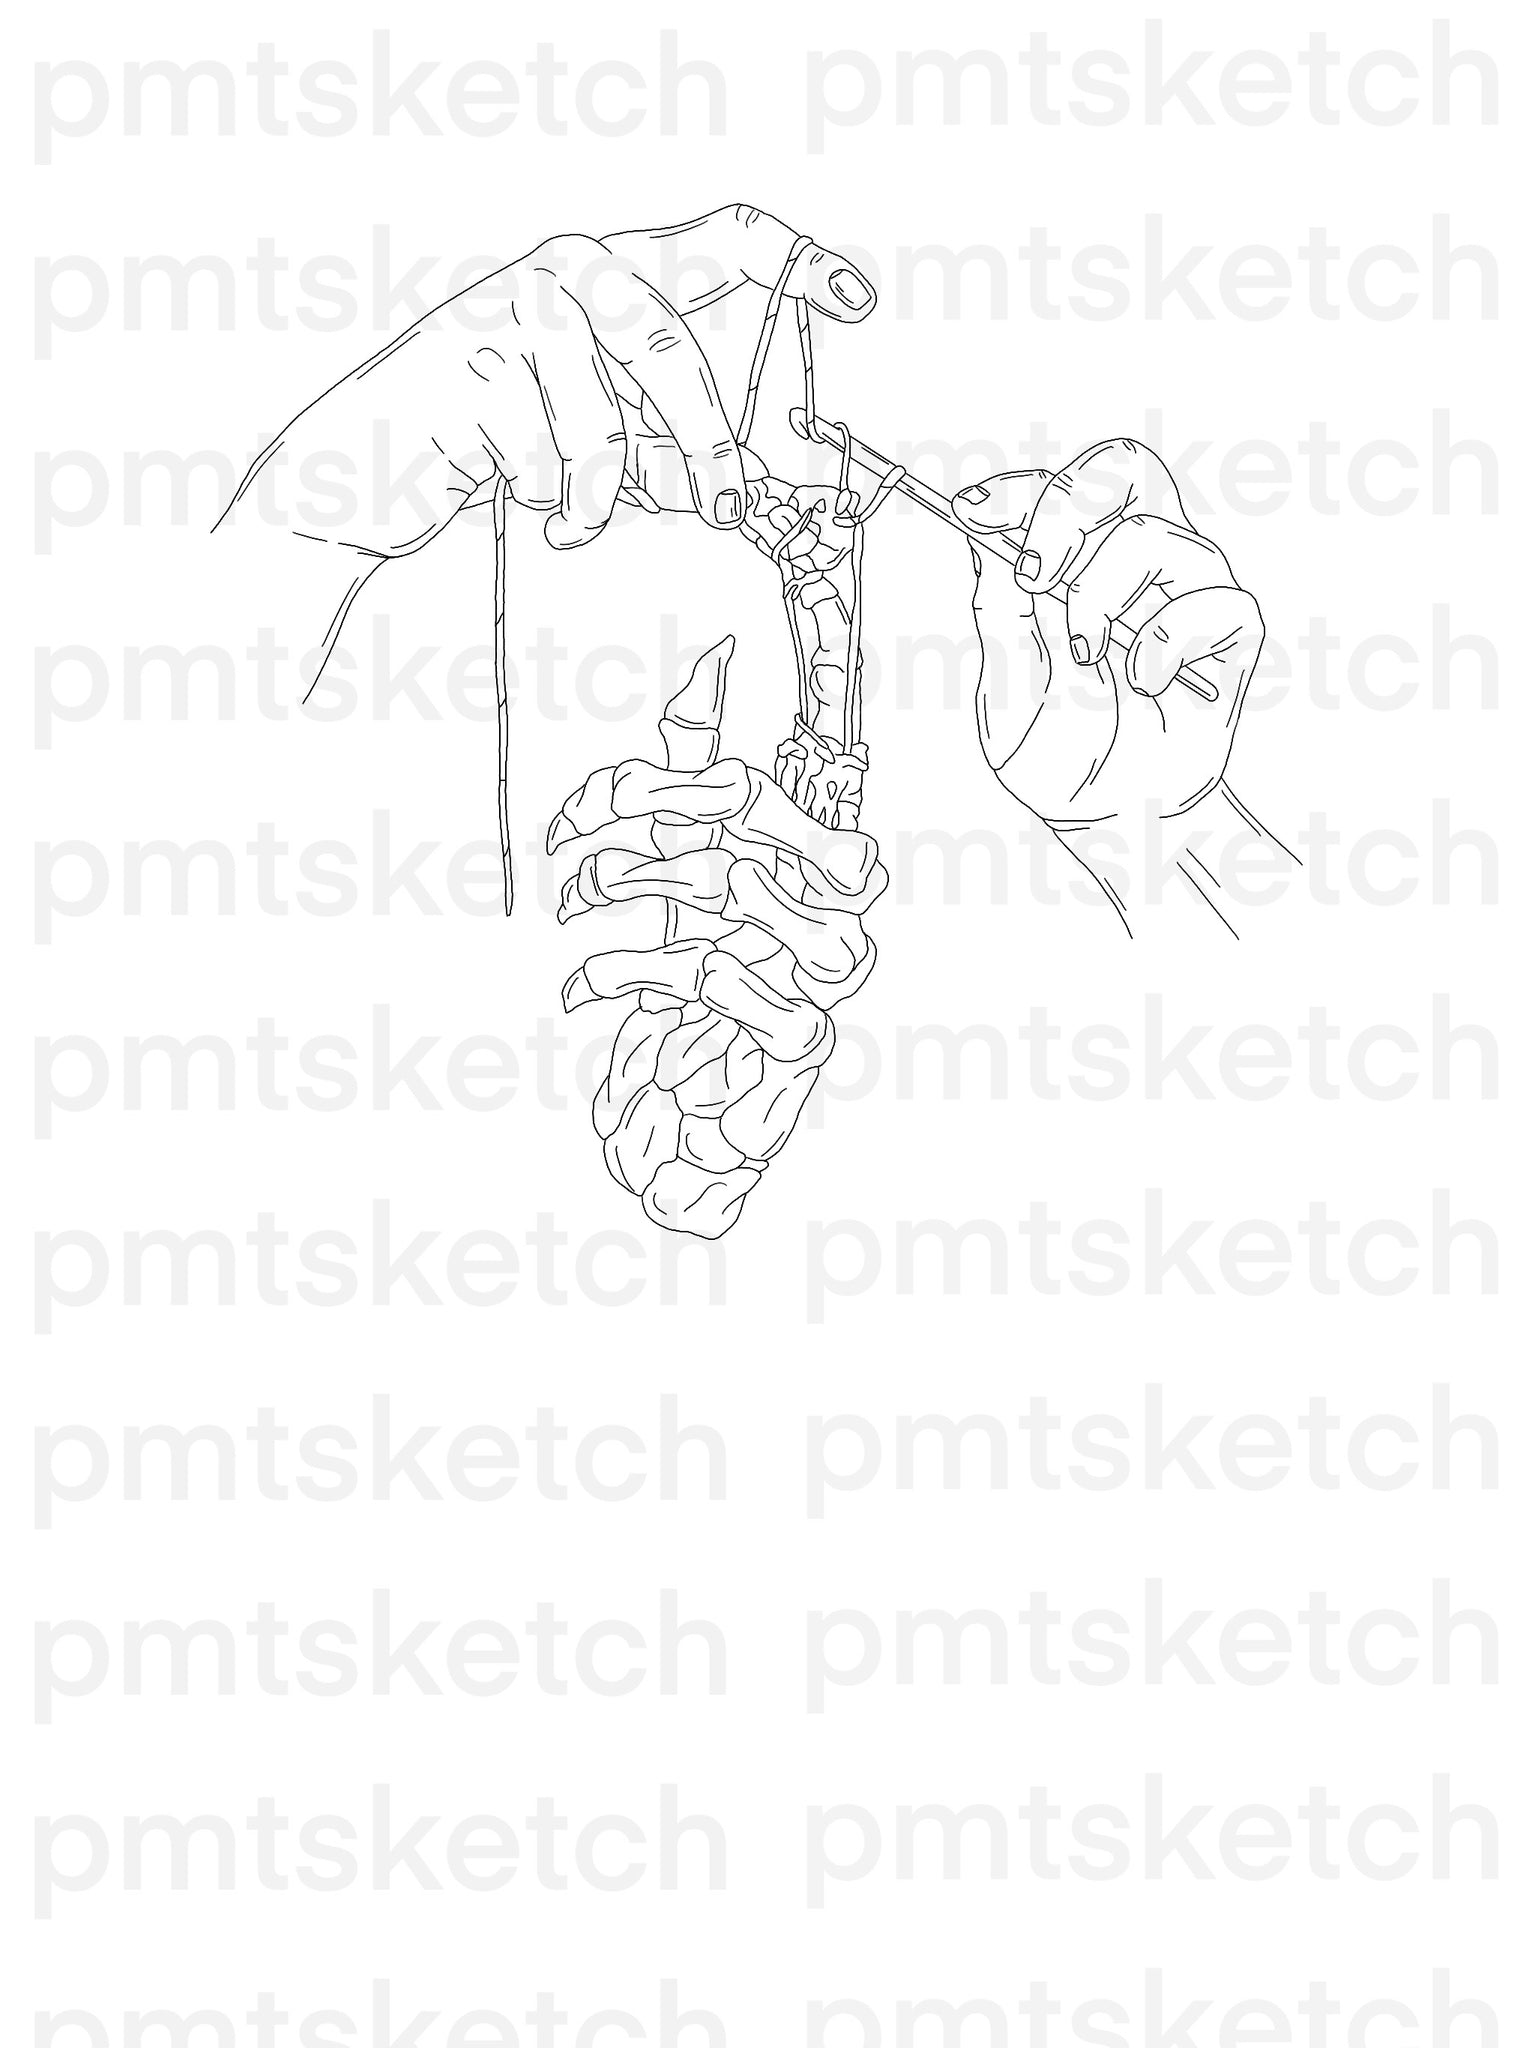 Hands / Knit / Skeleton